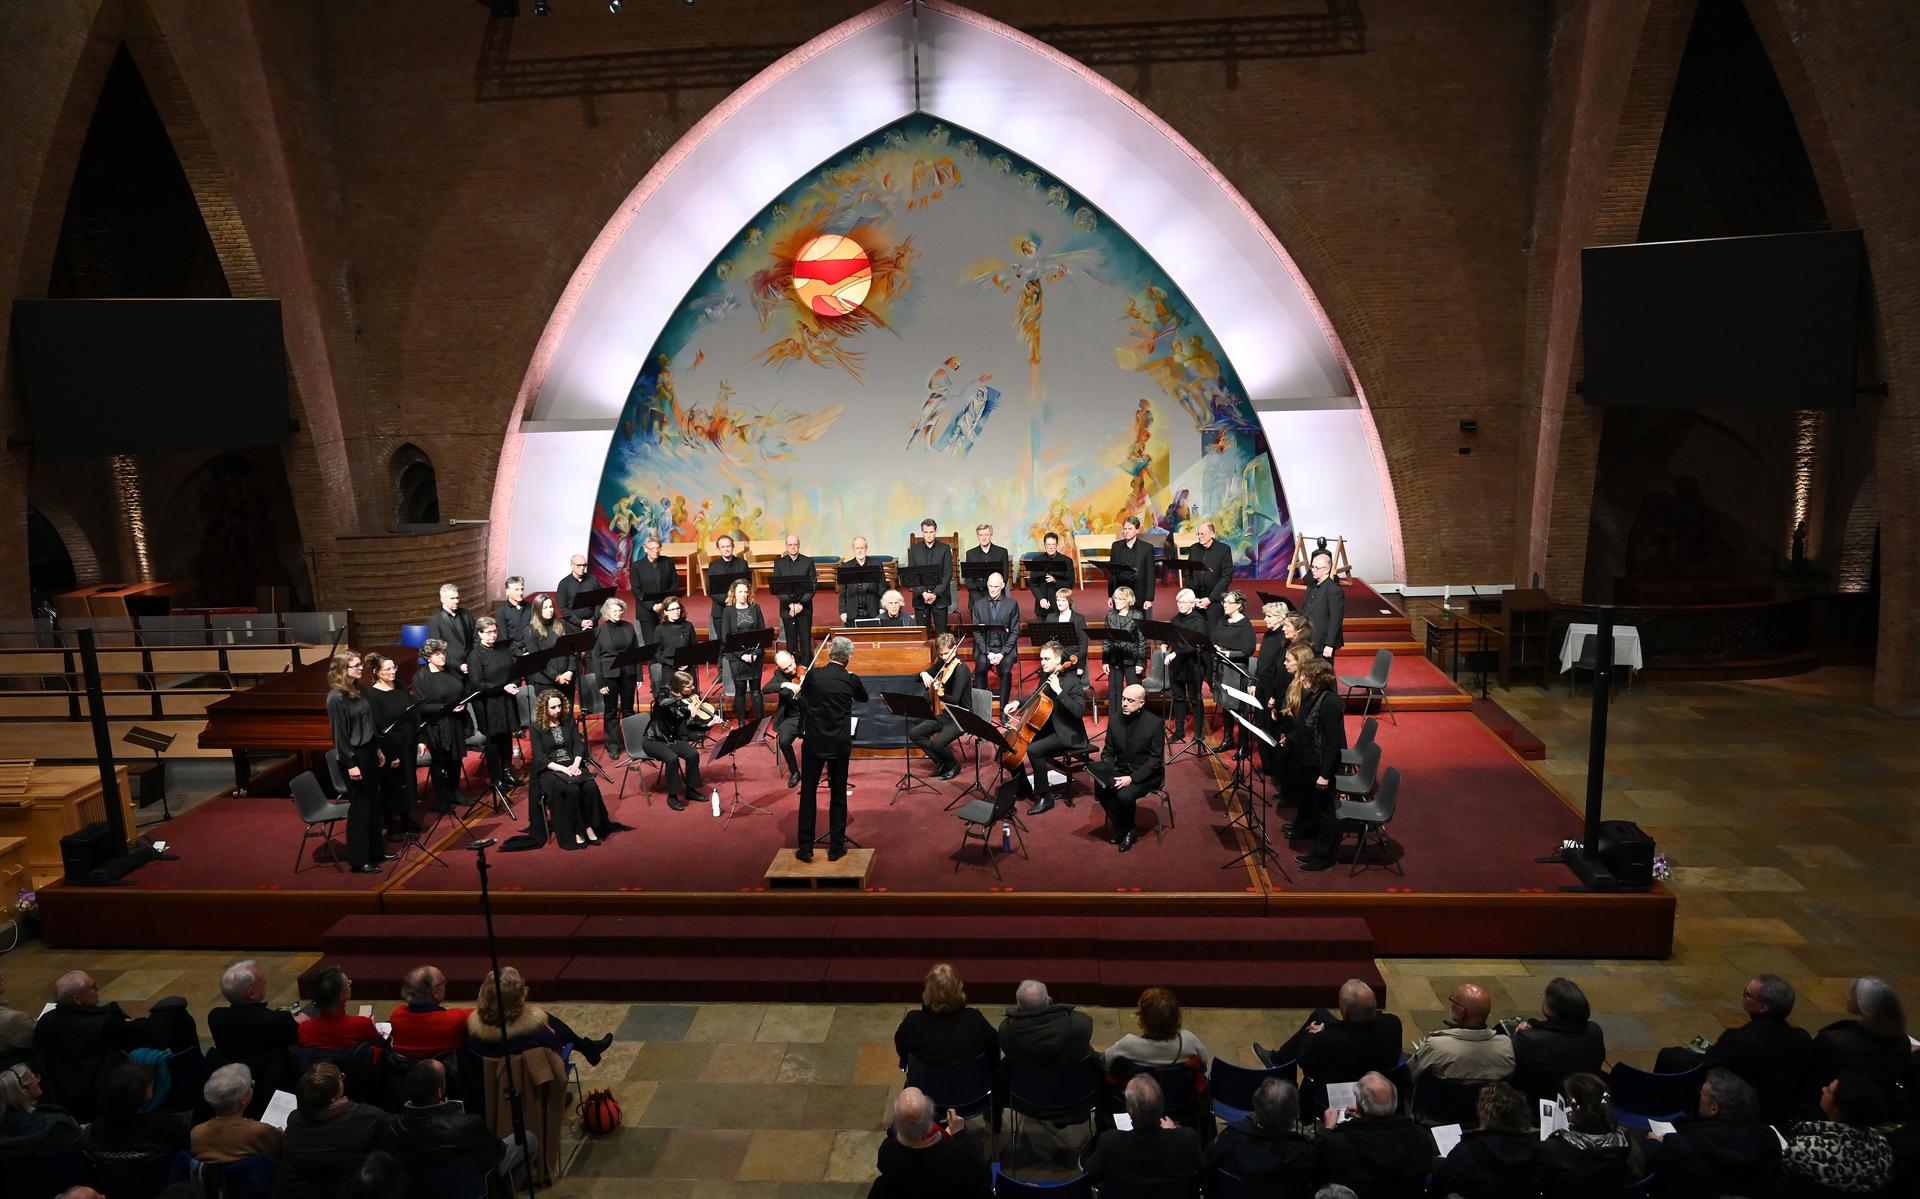 De uitvoering van de 'Johannes-Passion' in podium Zandberg58 in Breda, met Klaas Hoek op harmonium.